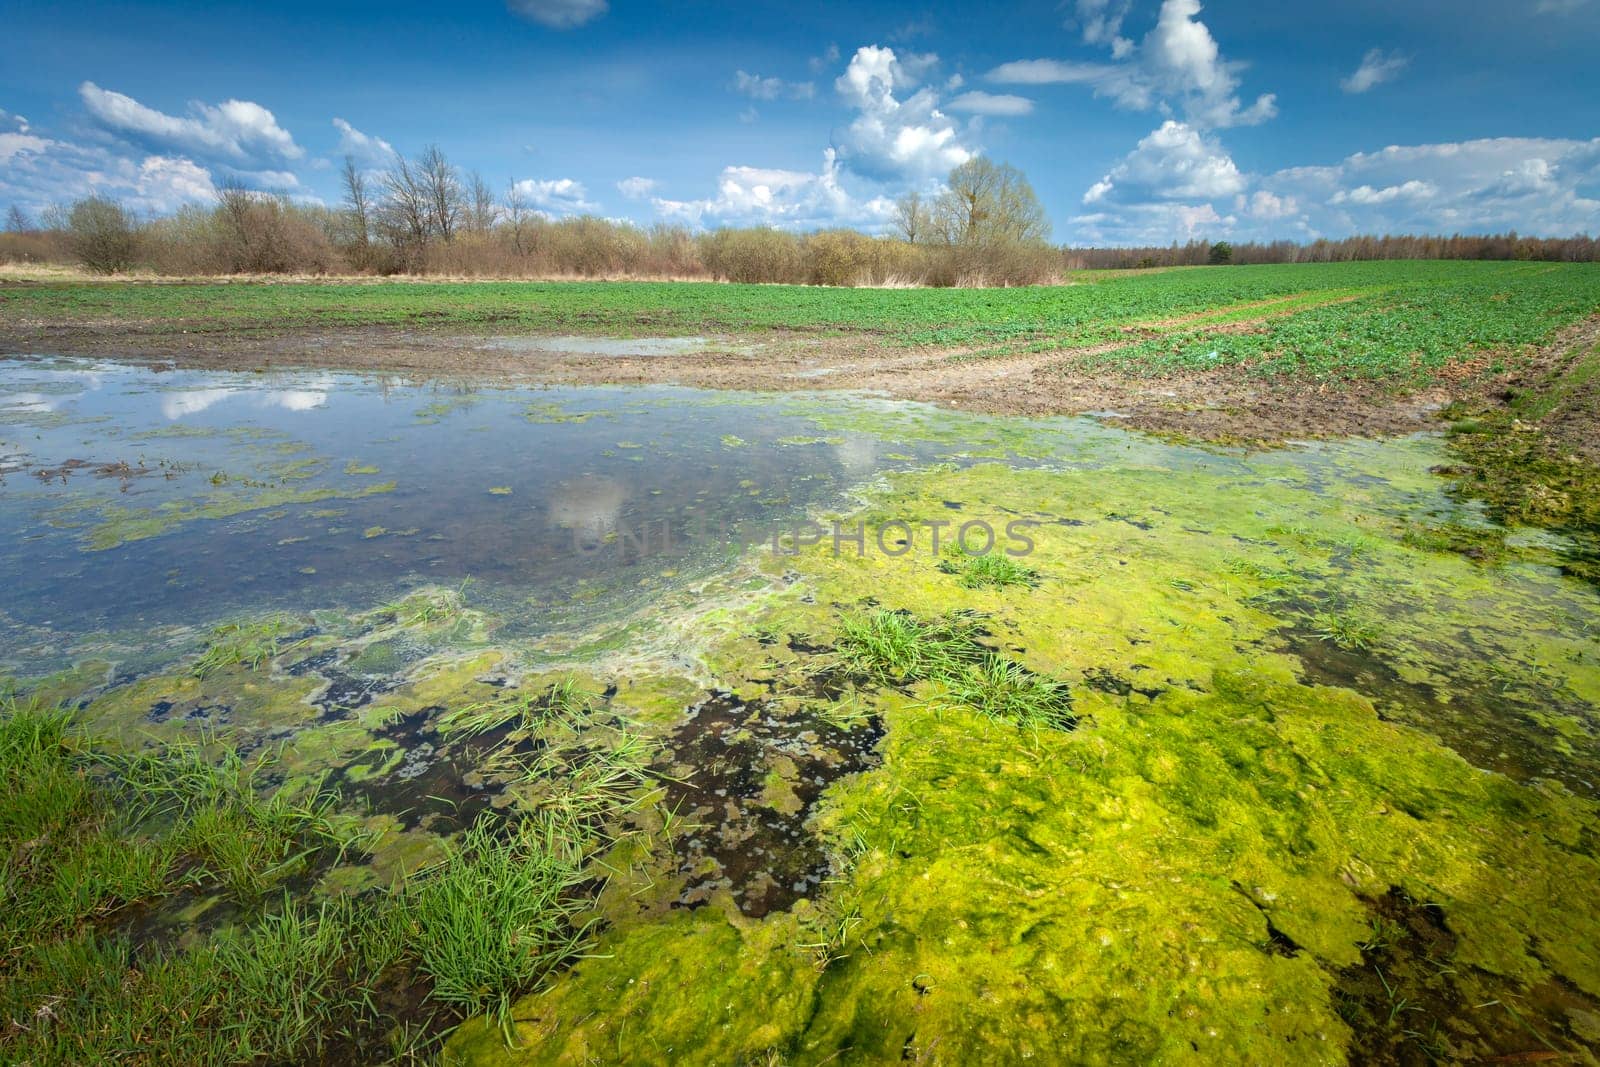 Green algae in water on farmland, spring rural landscape in eastern Poland